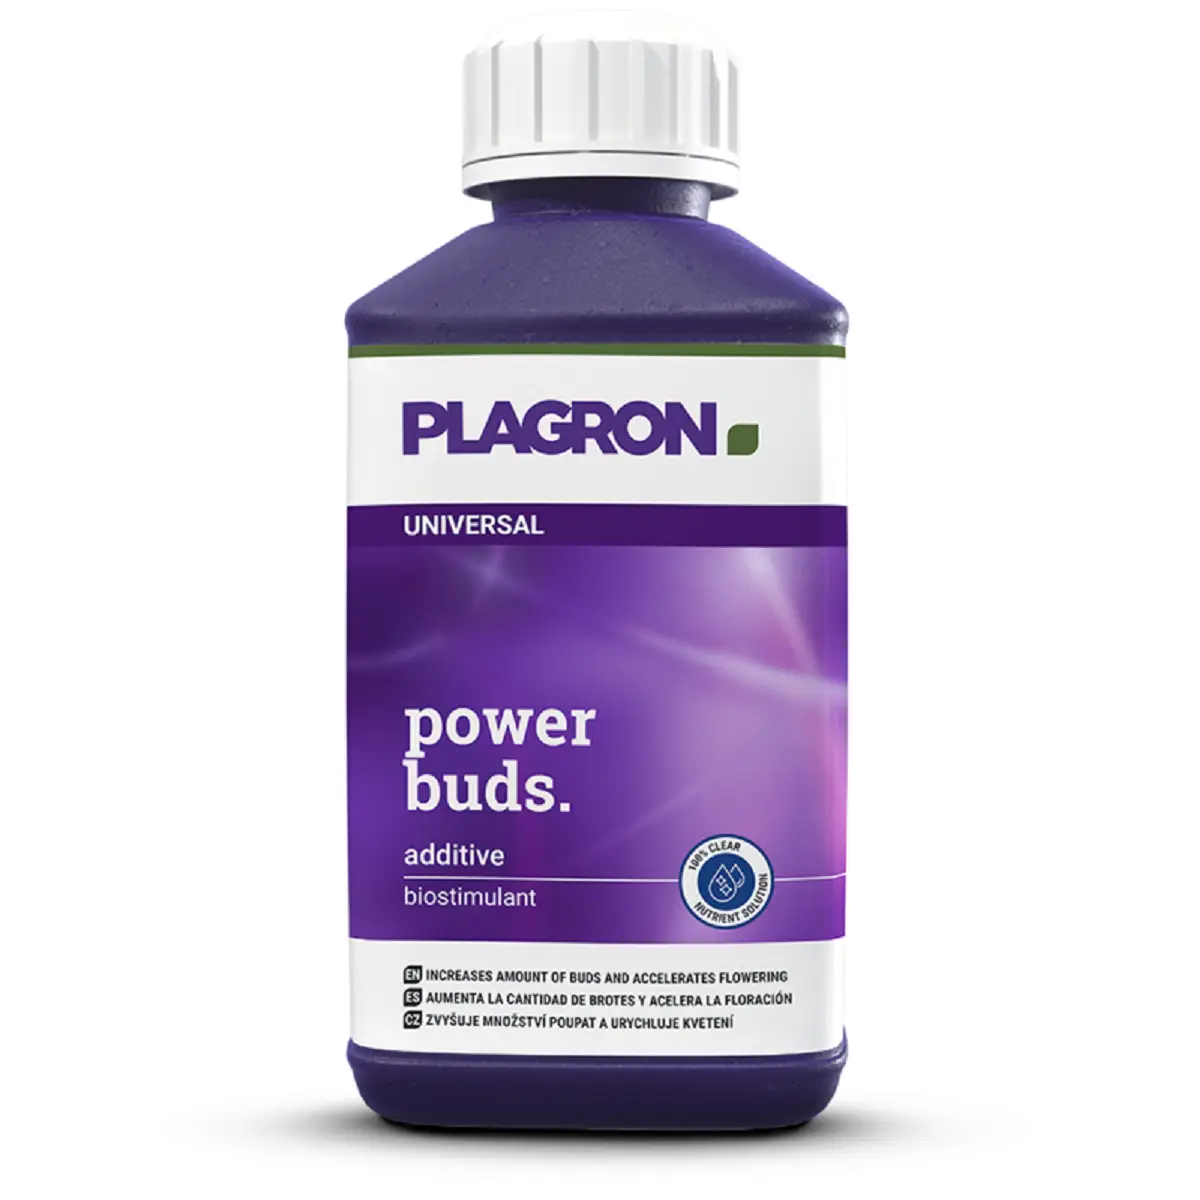 Plagron Power Buds en bouteimme de 1 litre